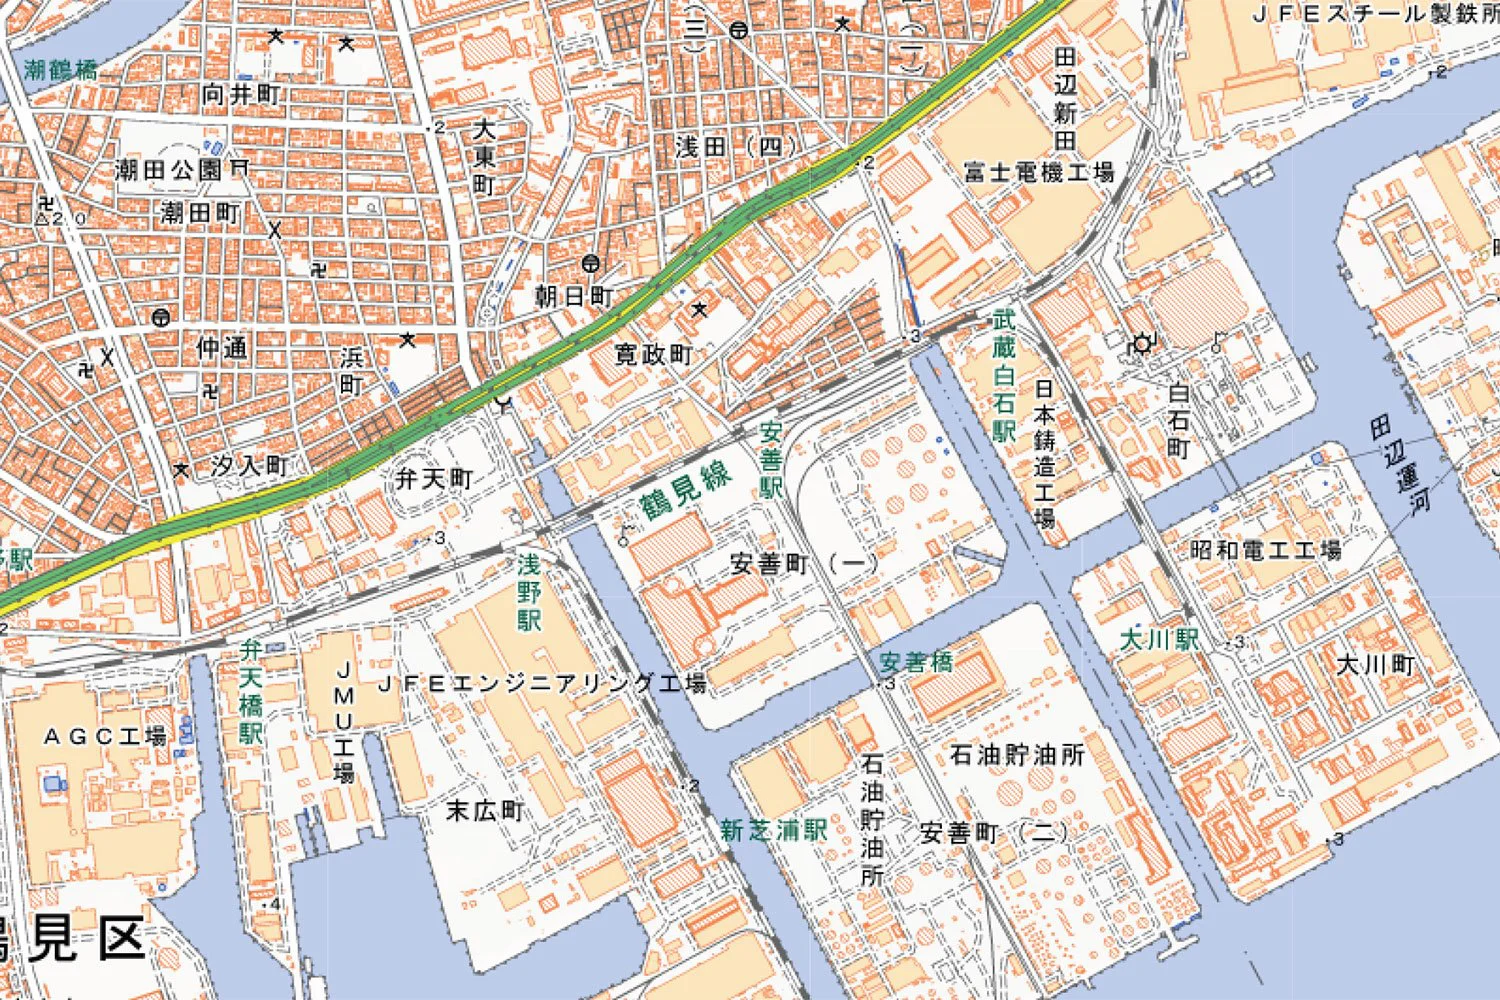 地名を起点に 地理 日本史 世界史の知識も深まる 地図研究家 今尾恵介さんに聞く 地名さんぽ の楽しみ方 後編 グーグルマップを使っても迷子になってしまうあなたへ さんたつ By 散歩の達人